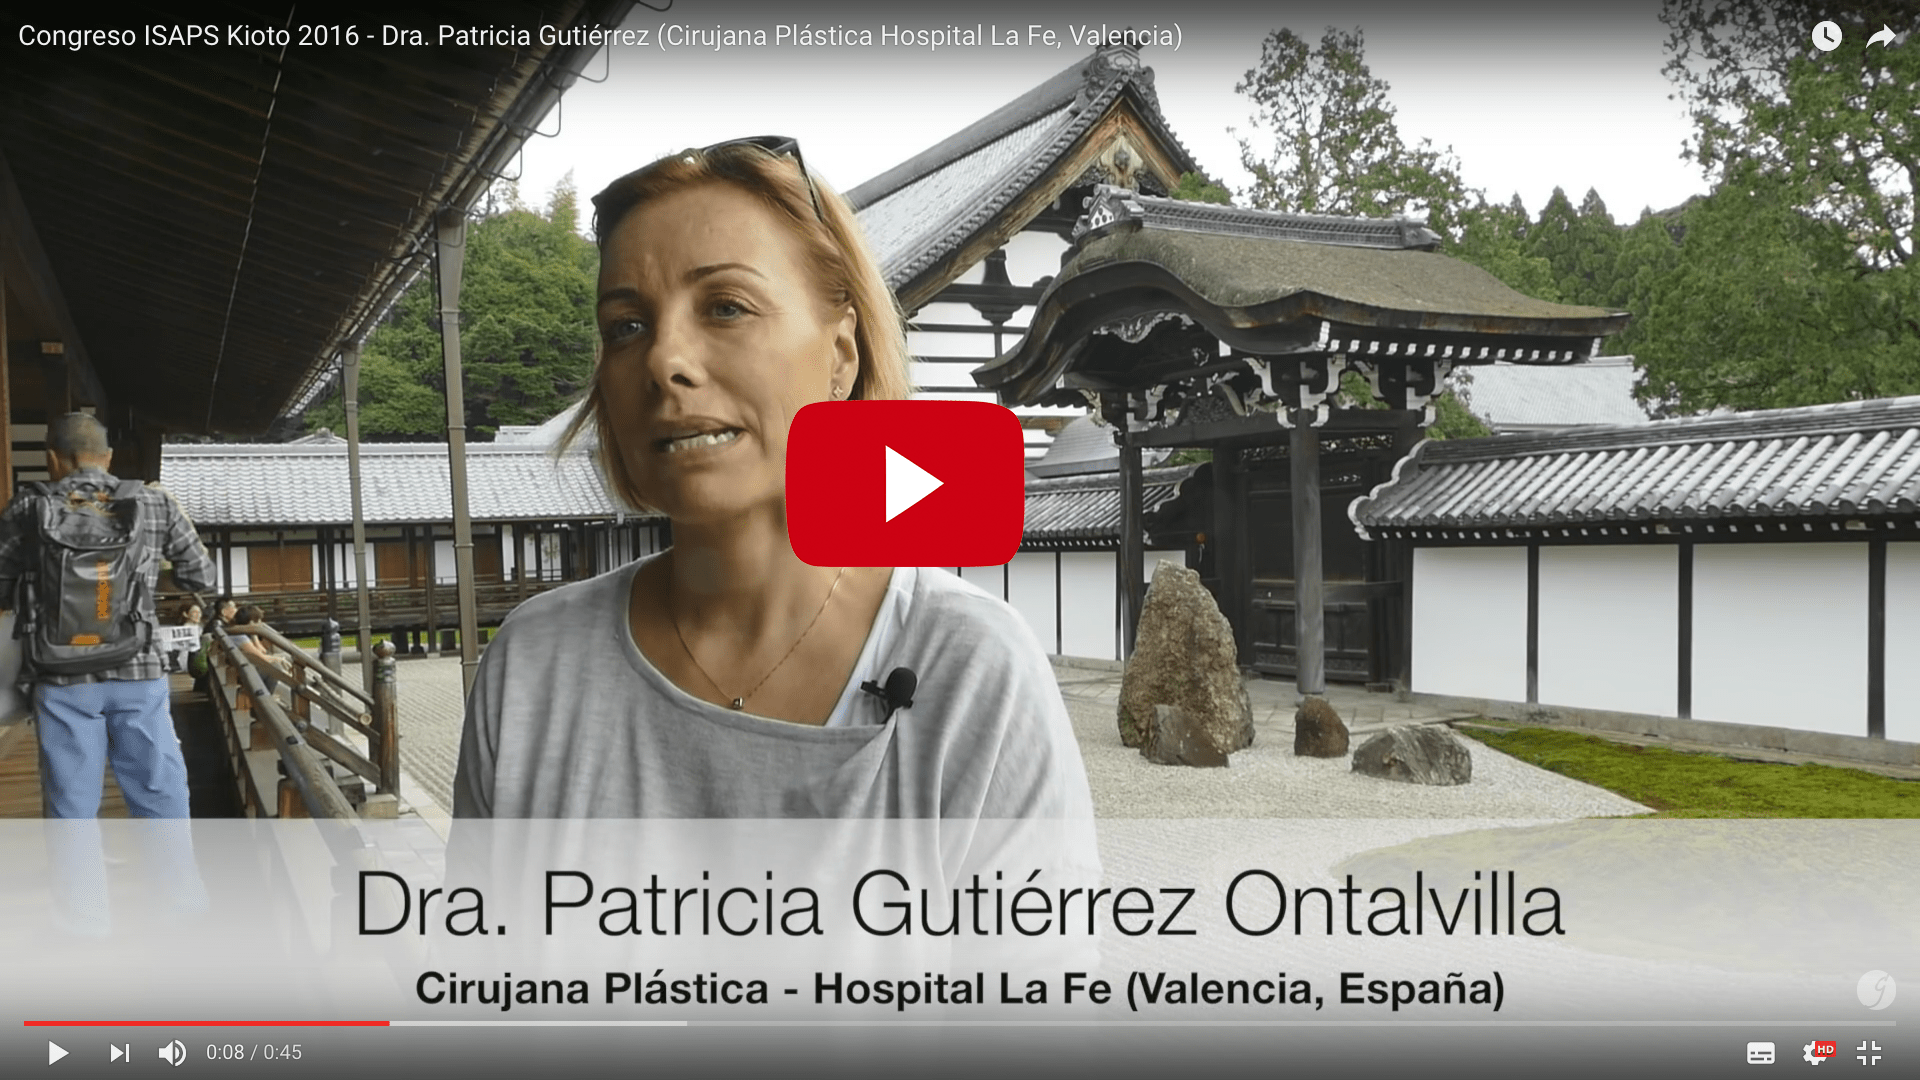 Vídeo resumen de la Dra. Patricia Gutiérrez sobre su ponencia en el 23 Congreso de la ISAPS en Kioto (Japón)